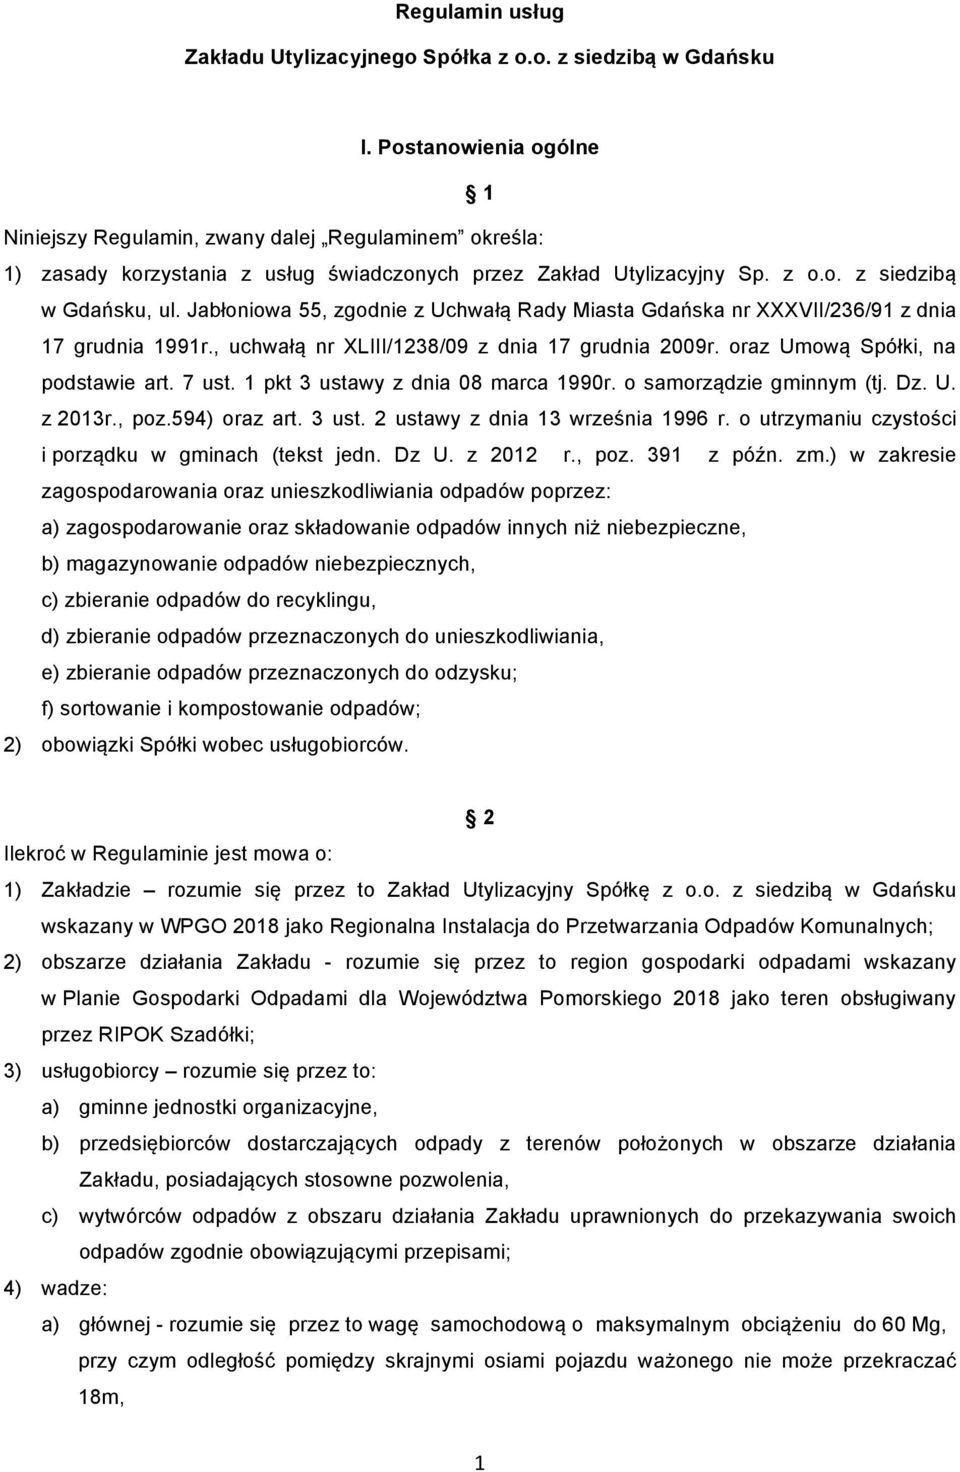 Jabłoniowa 55, zgodnie z Uchwałą Rady Miasta Gdańska nr XXXVII/236/91 z dnia 17 grudnia 1991r., uchwałą nr XLIII/1238/09 z dnia 17 grudnia 2009r. oraz Umową Spółki, na podstawie art. 7 ust.